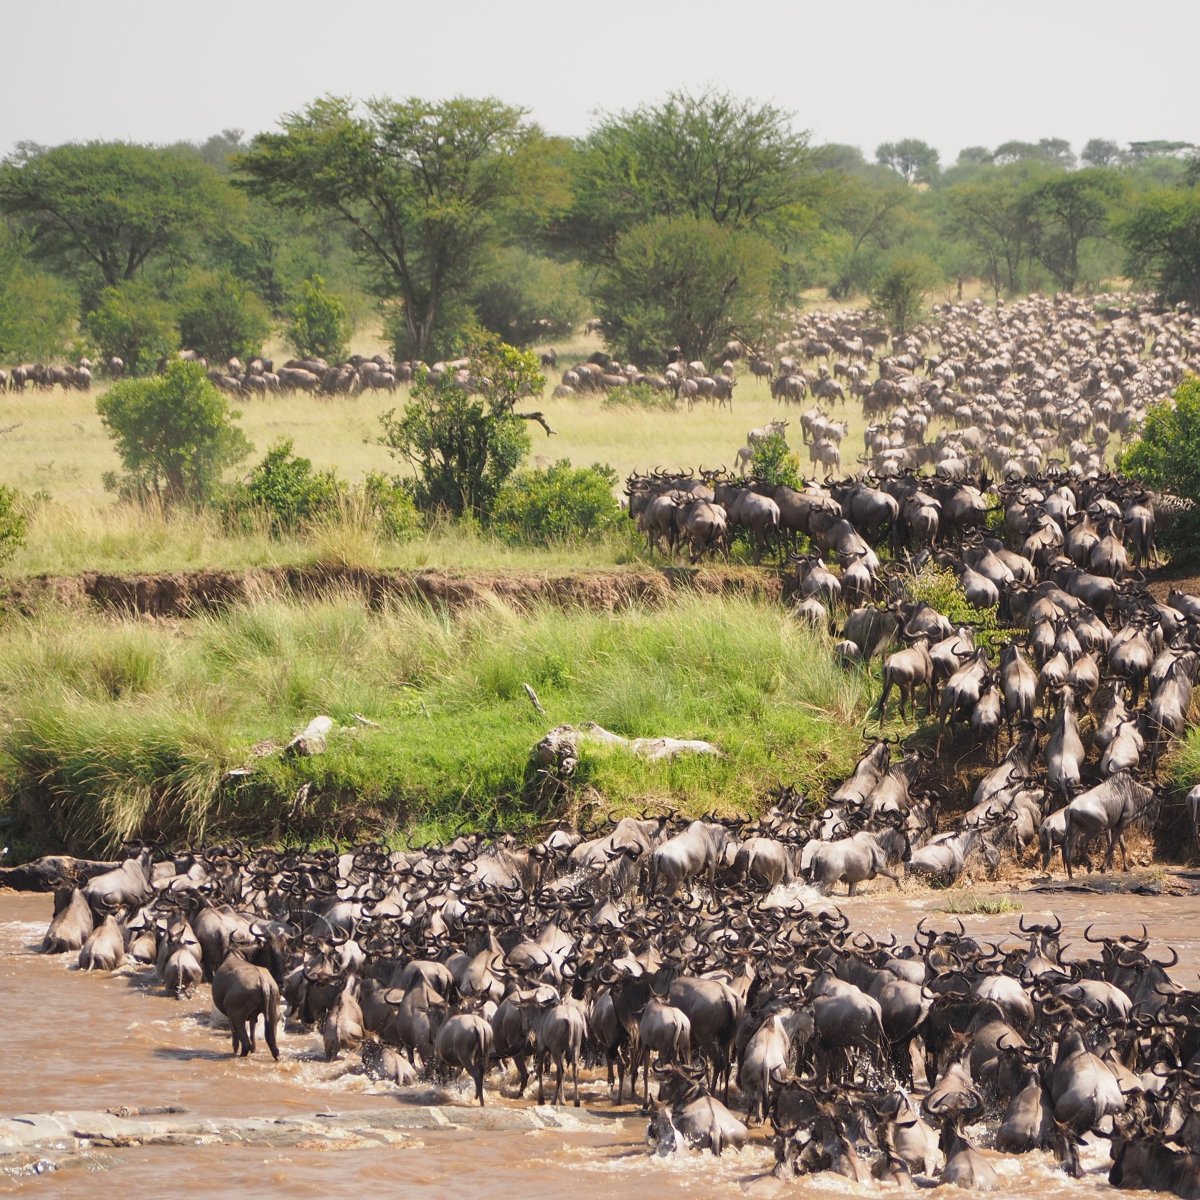 Wildebeest herd of the Great Wildlife Migration crossing the Mara River